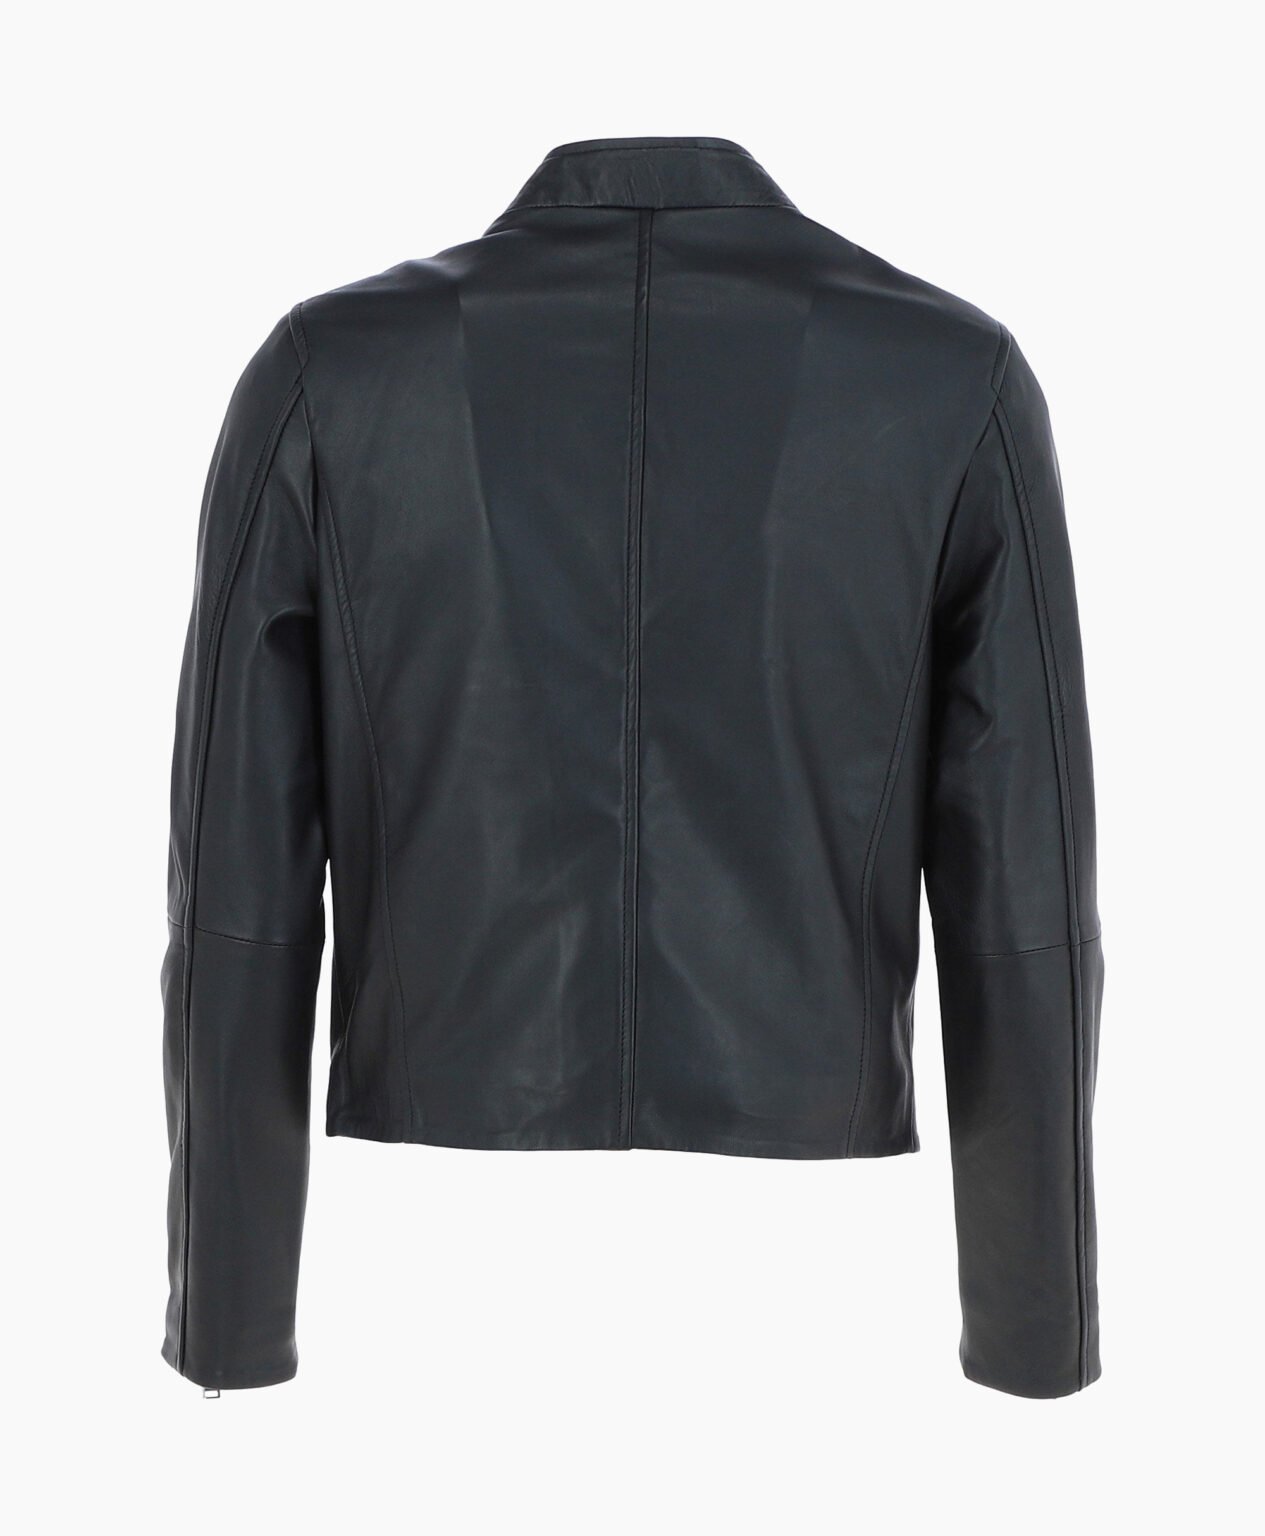 vogue-jacket-leather-biker-jacket-black-logan-image202